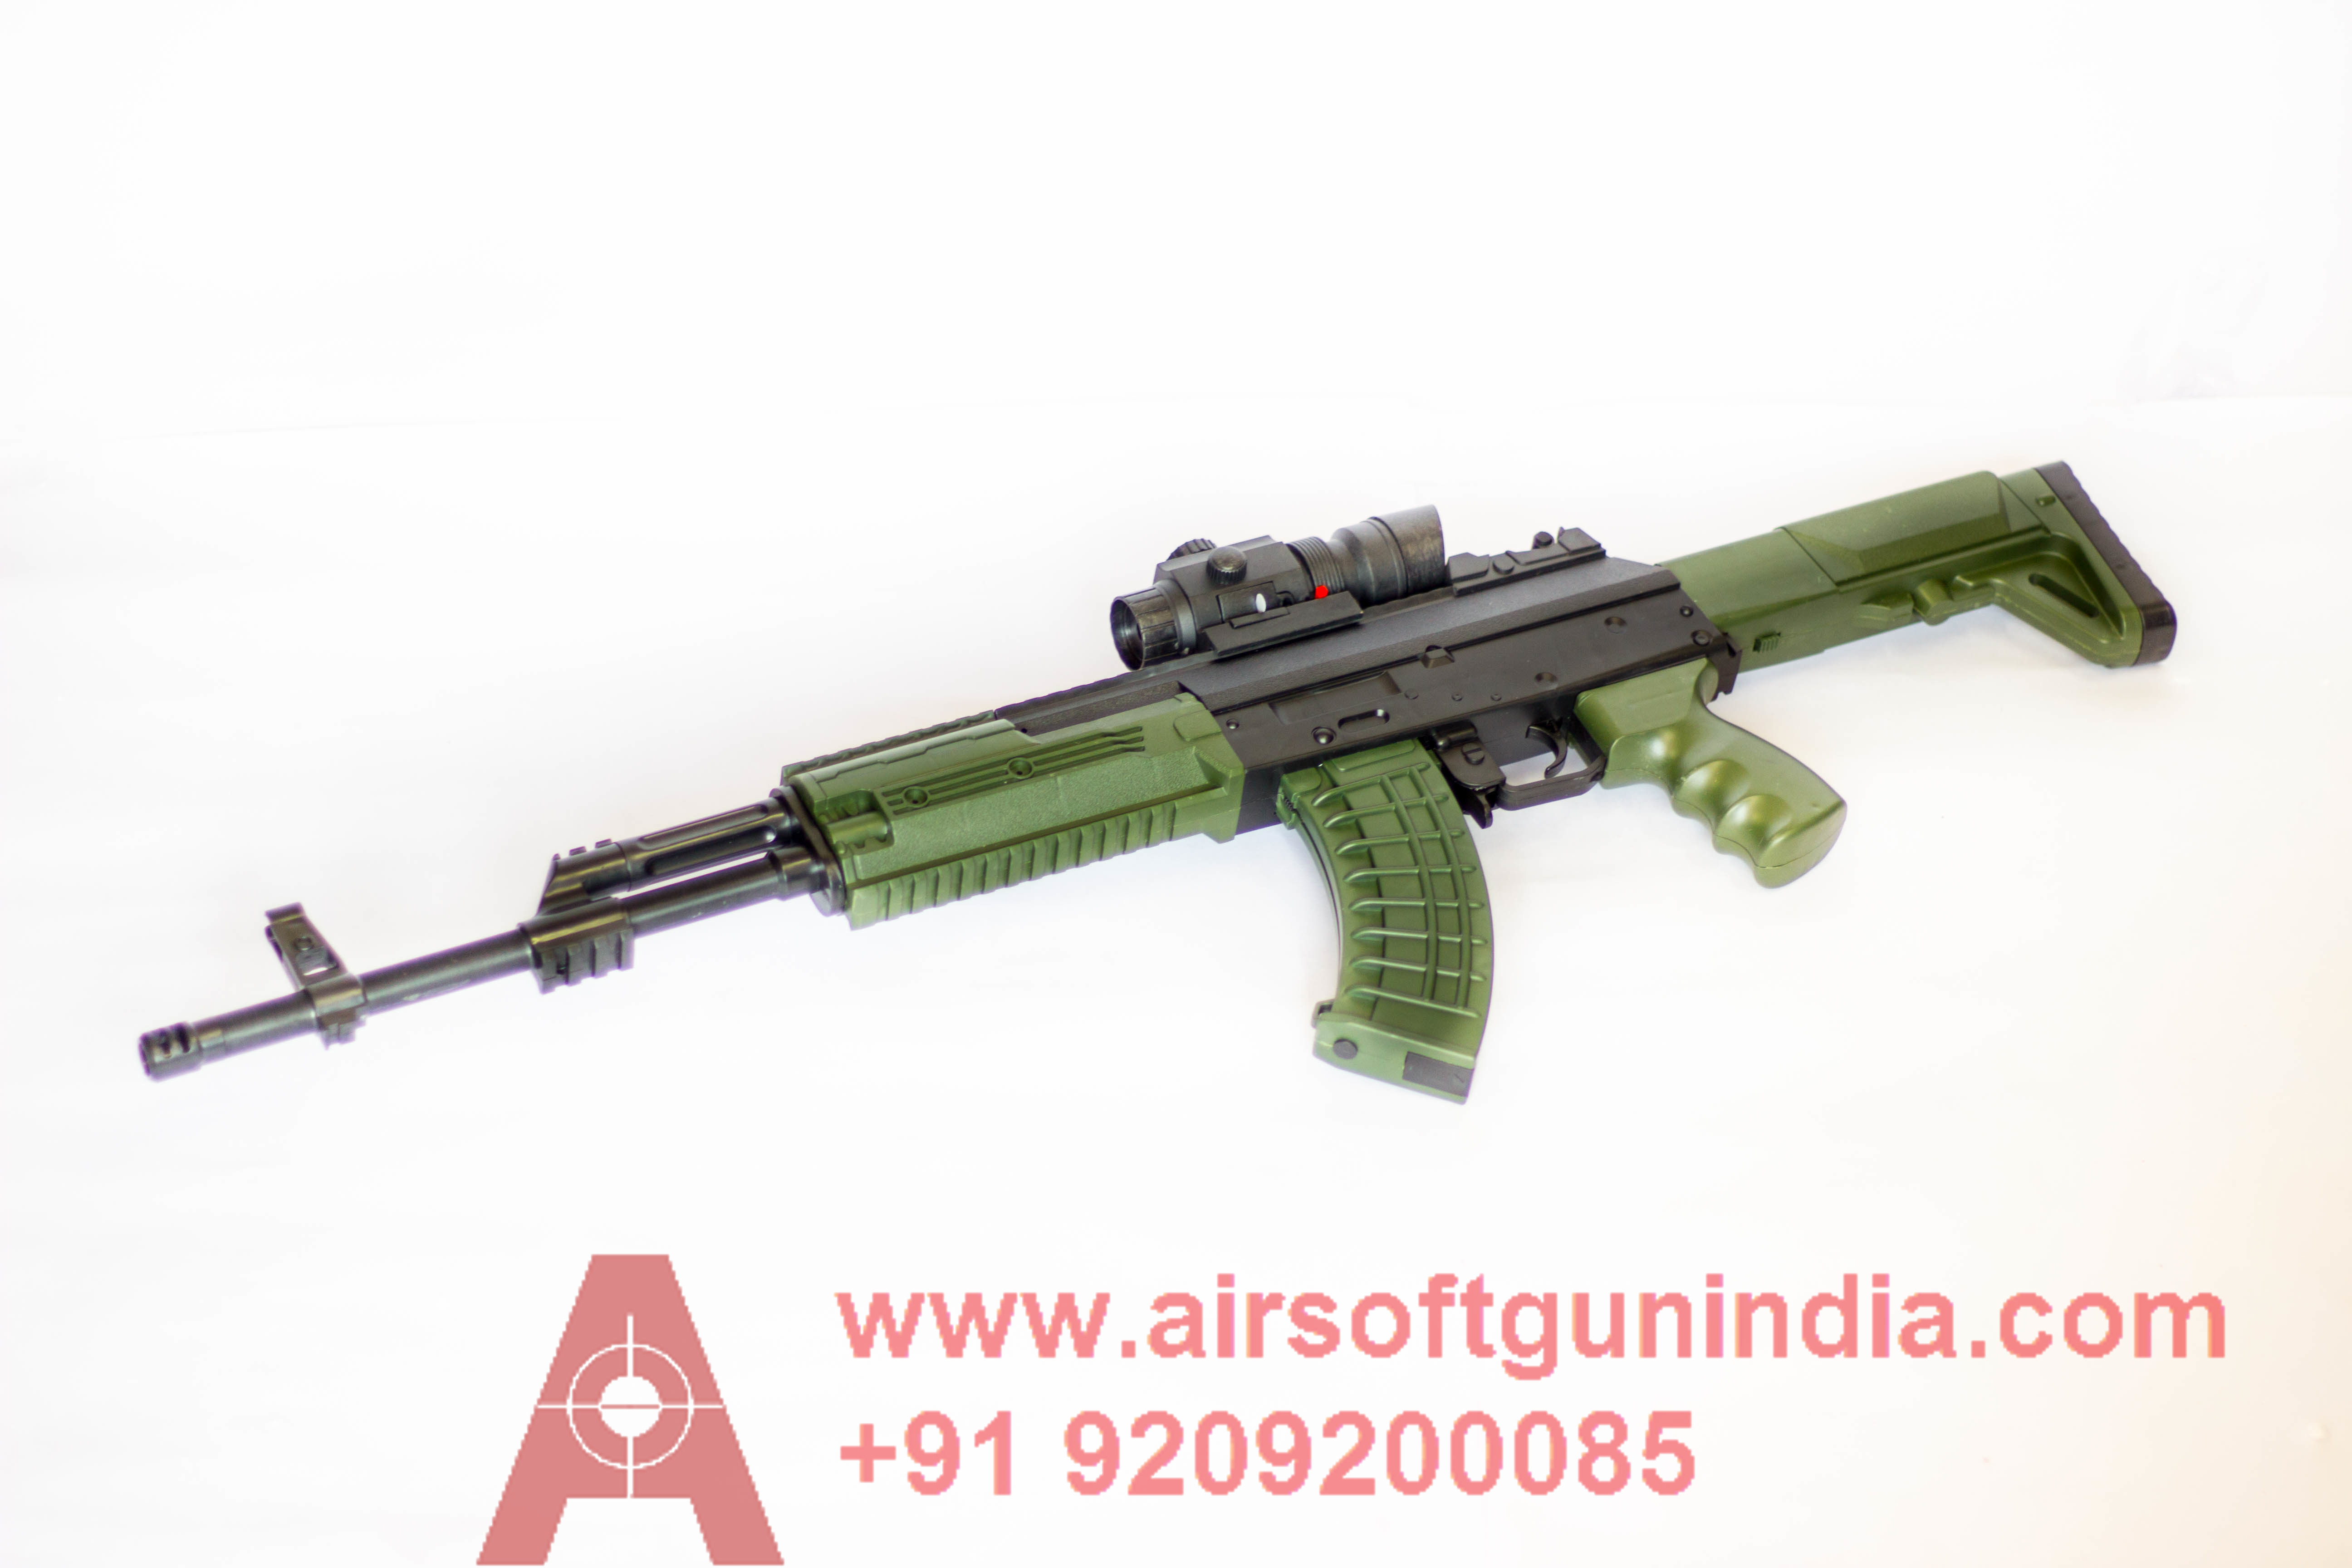 02071 Hybrid Airsoft AK47 by Airsoft Gun India - Airsoft Gun India